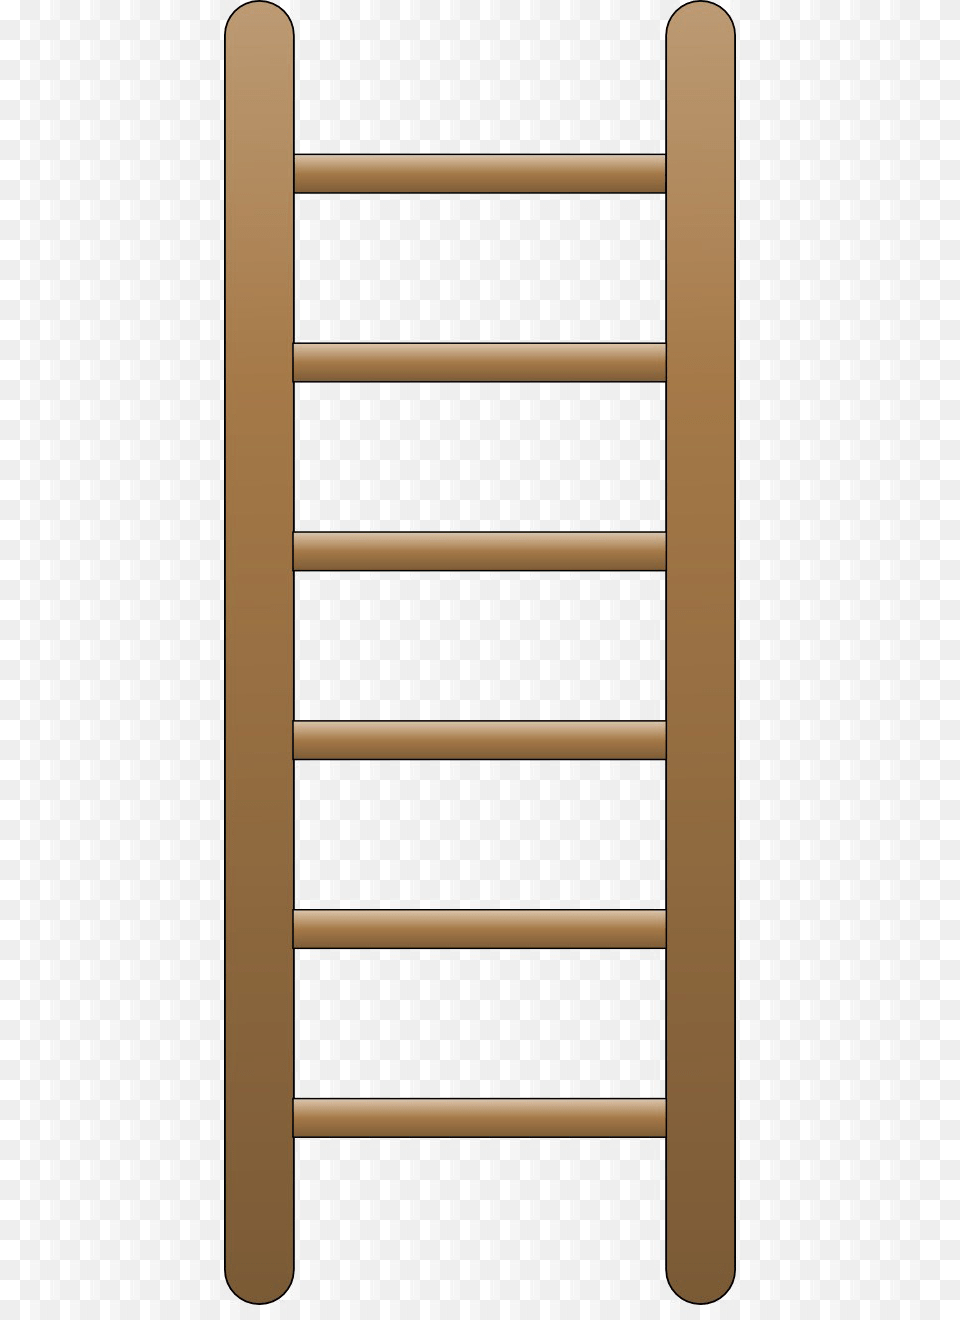 Background Ladder, Furniture Png Image